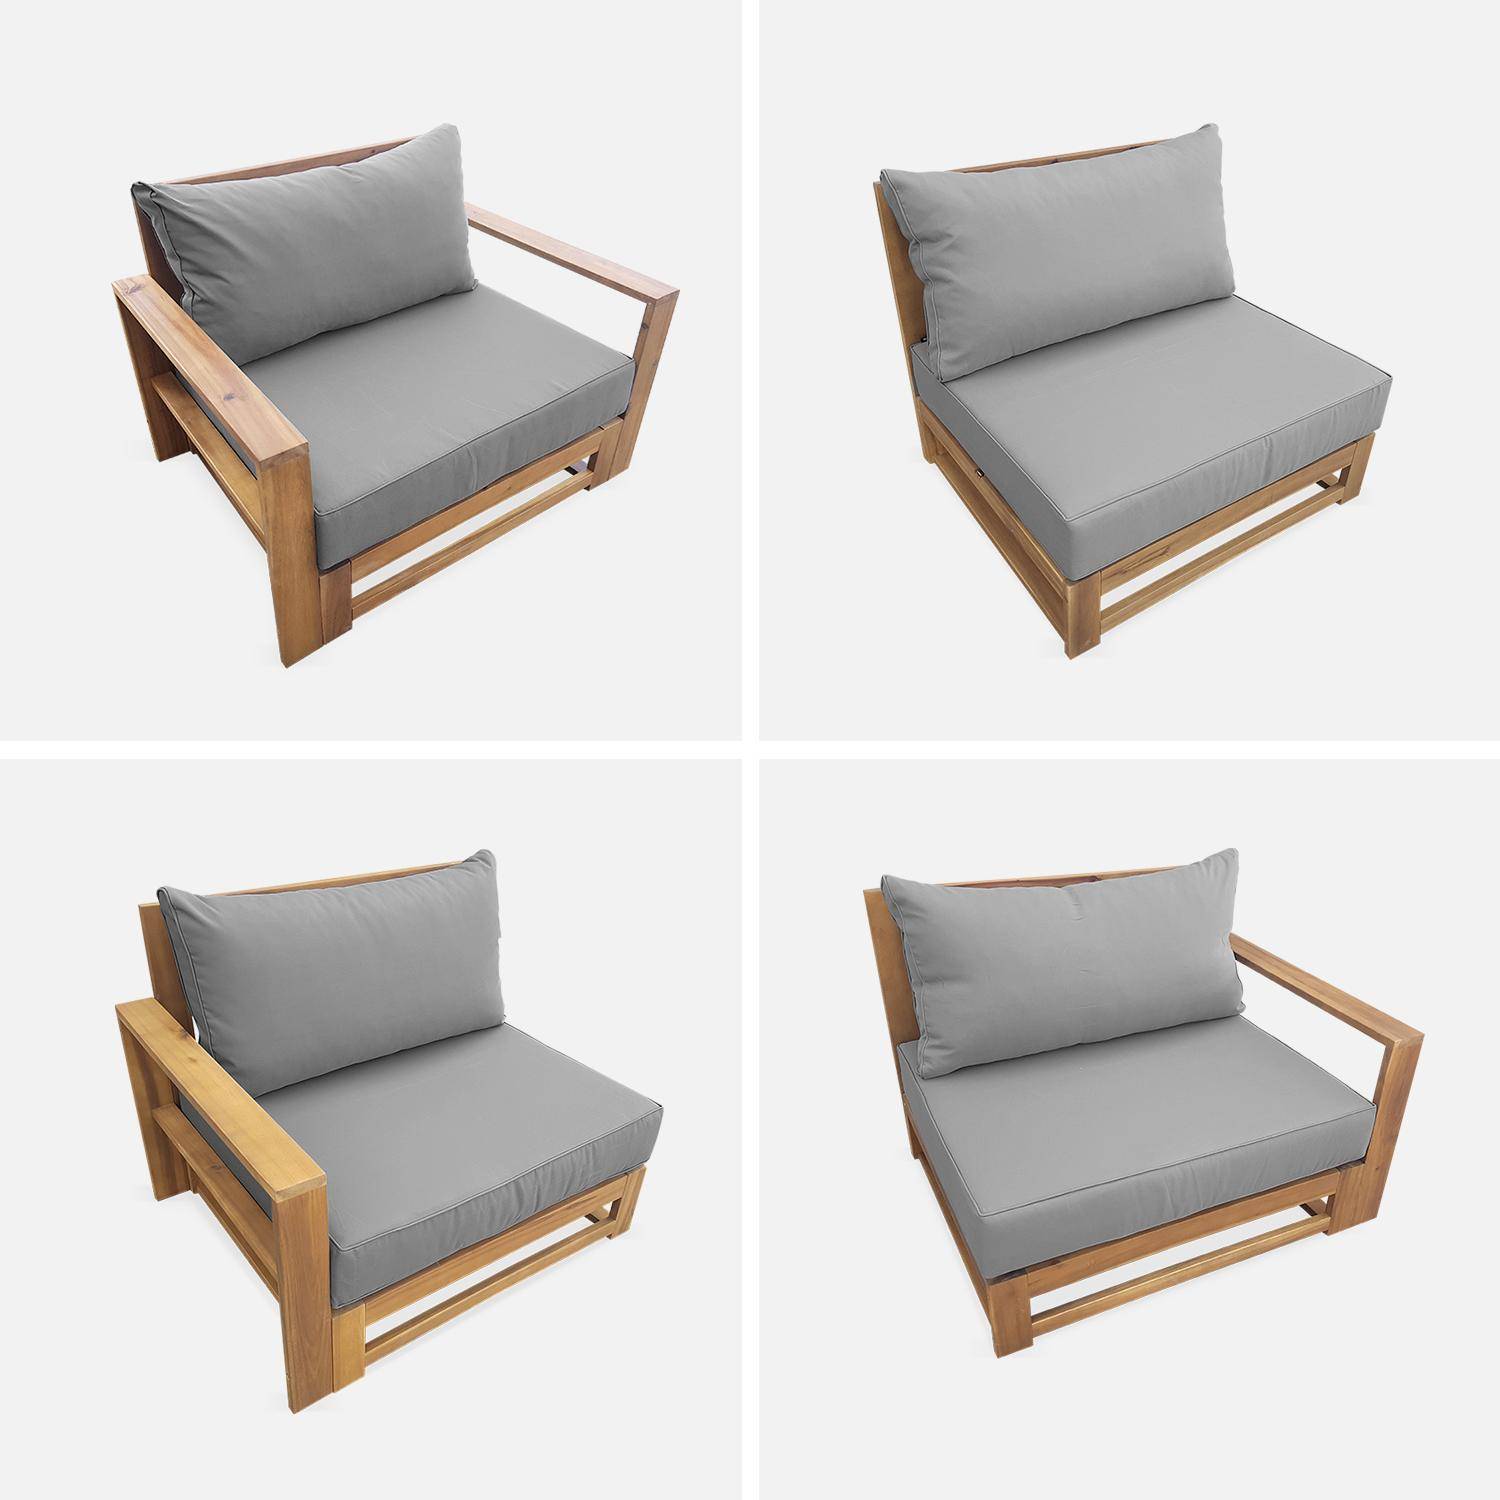 Gartenmöbel aus Holz mit 5 Sitzplätzen - Mendoza - graue Kissen, Sofa, Sessel und Couchtisch aus Akazie, 6 modulare Elemente, Design Photo7